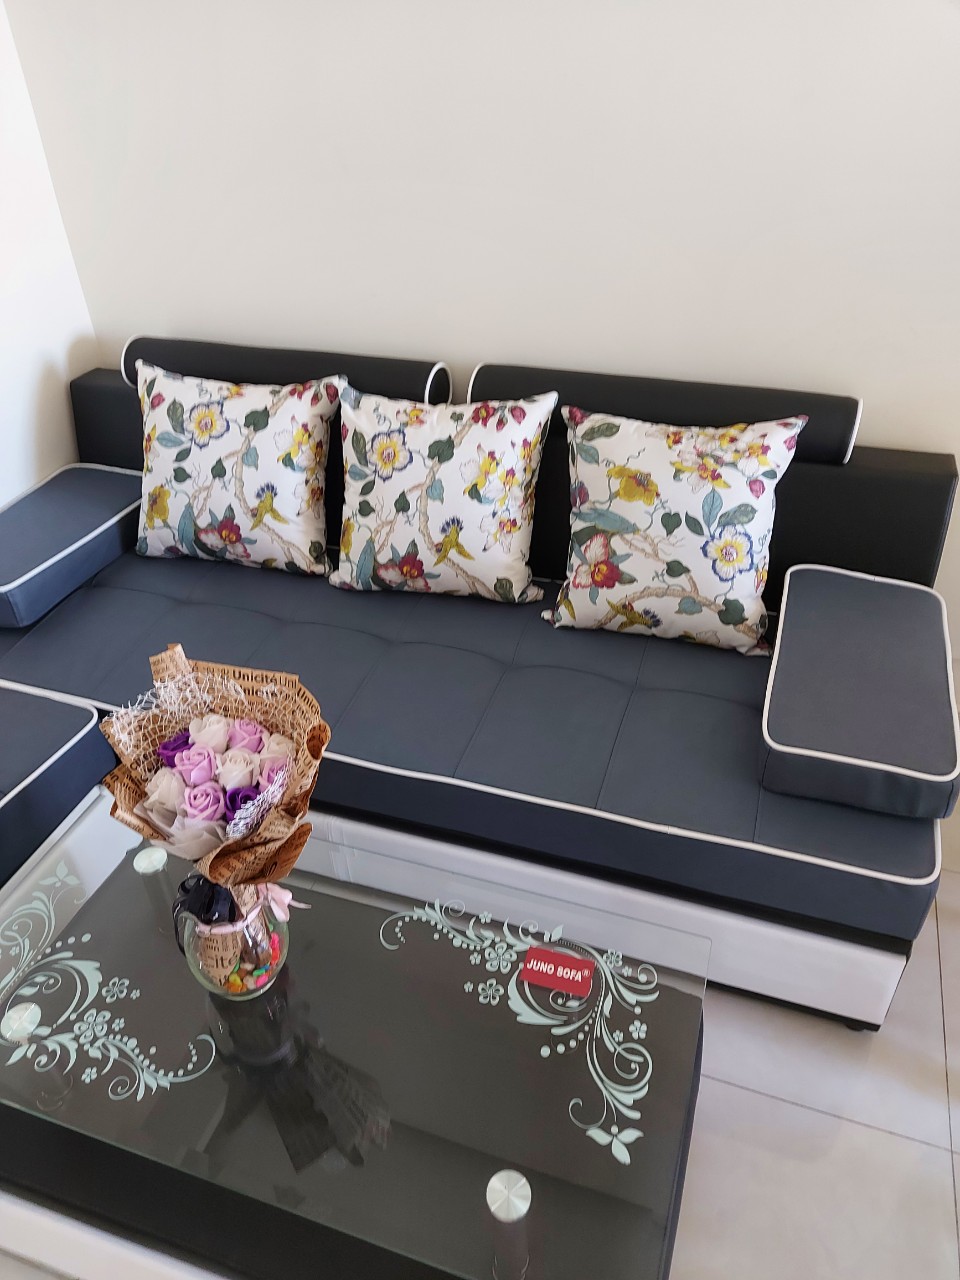 Bộ sofa phòng Khách 2m2 dành cho chung cư Juno Sofa bao gồm đủ gối, đôn và bàn trà kính